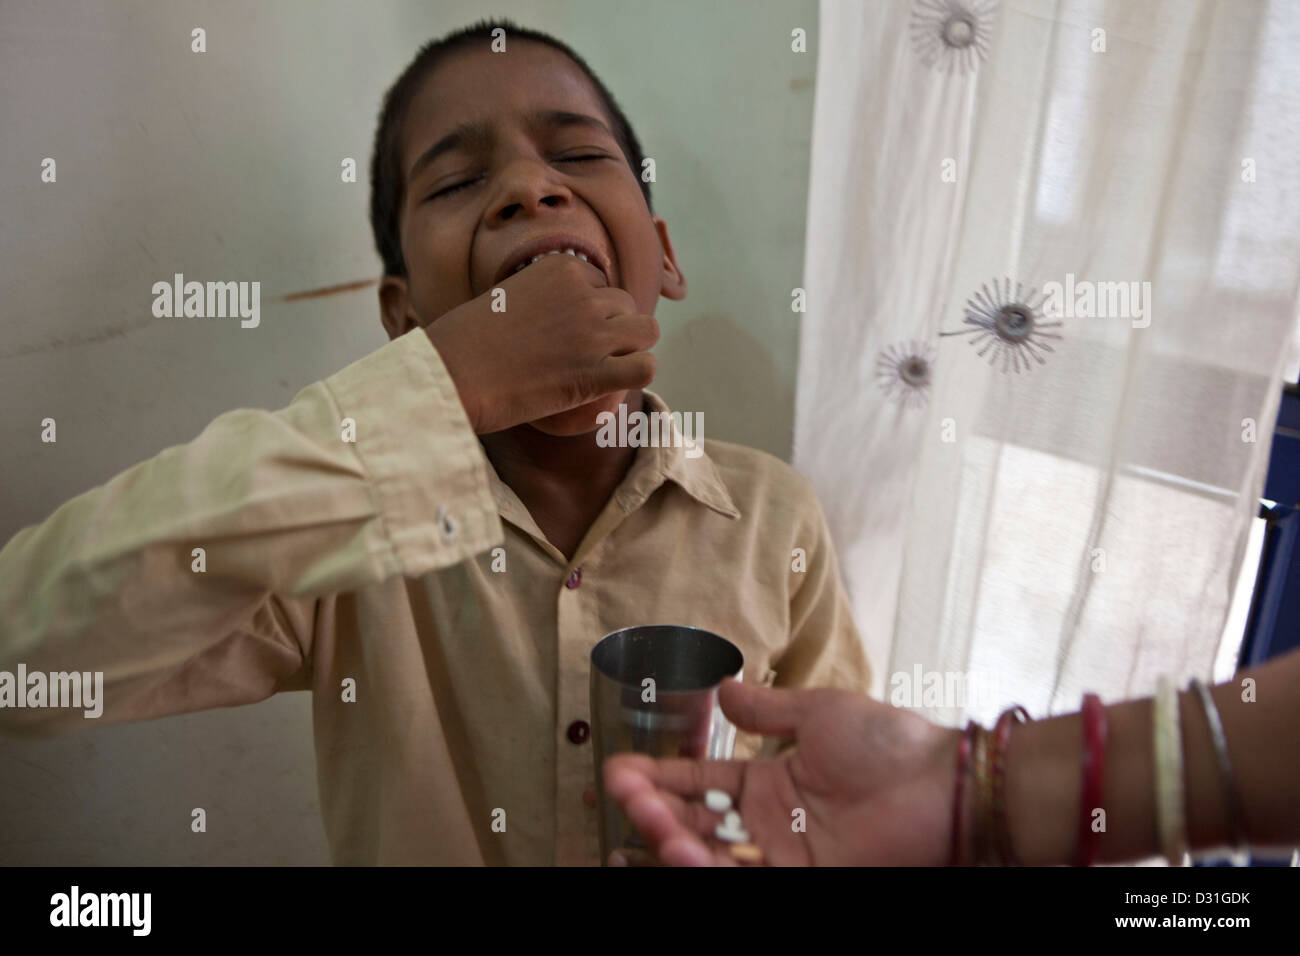 8 Jahre alten indischen jungen erhält seine täglichen Medikamente Tabletten für Tuberkulose (TB) die verzichtet wird, sind für ihn. Delhi, Indien Stockfoto